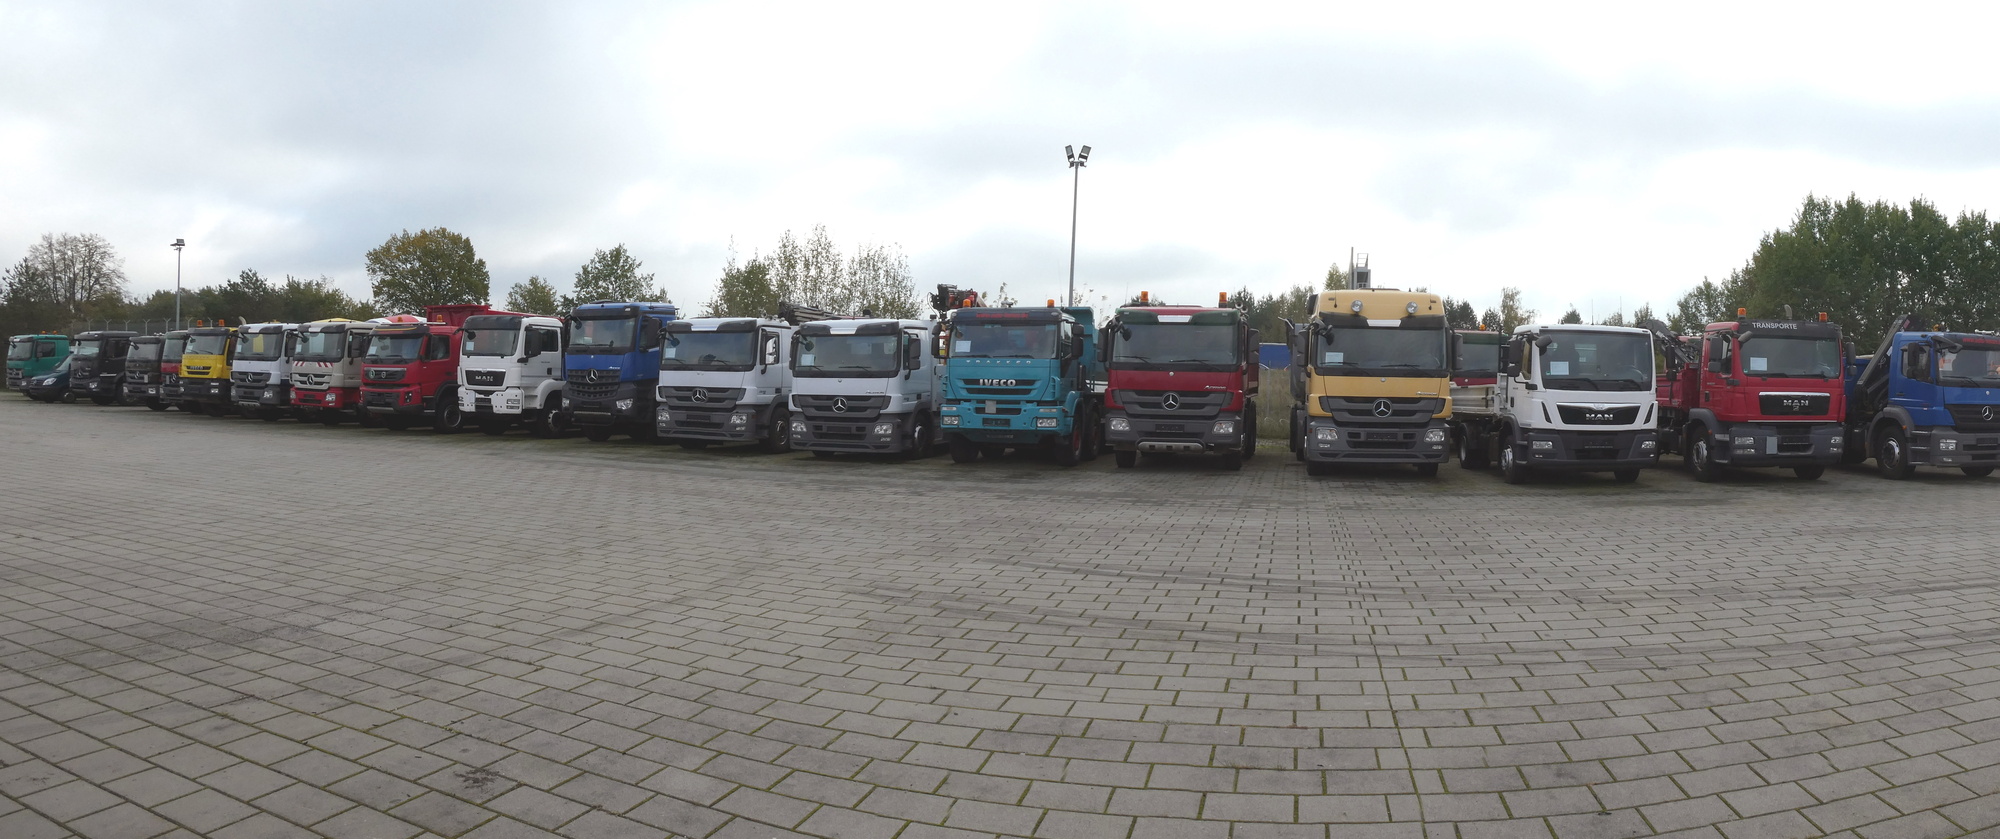 Henze Truck GmbH - Грузовики undefined: фото 1